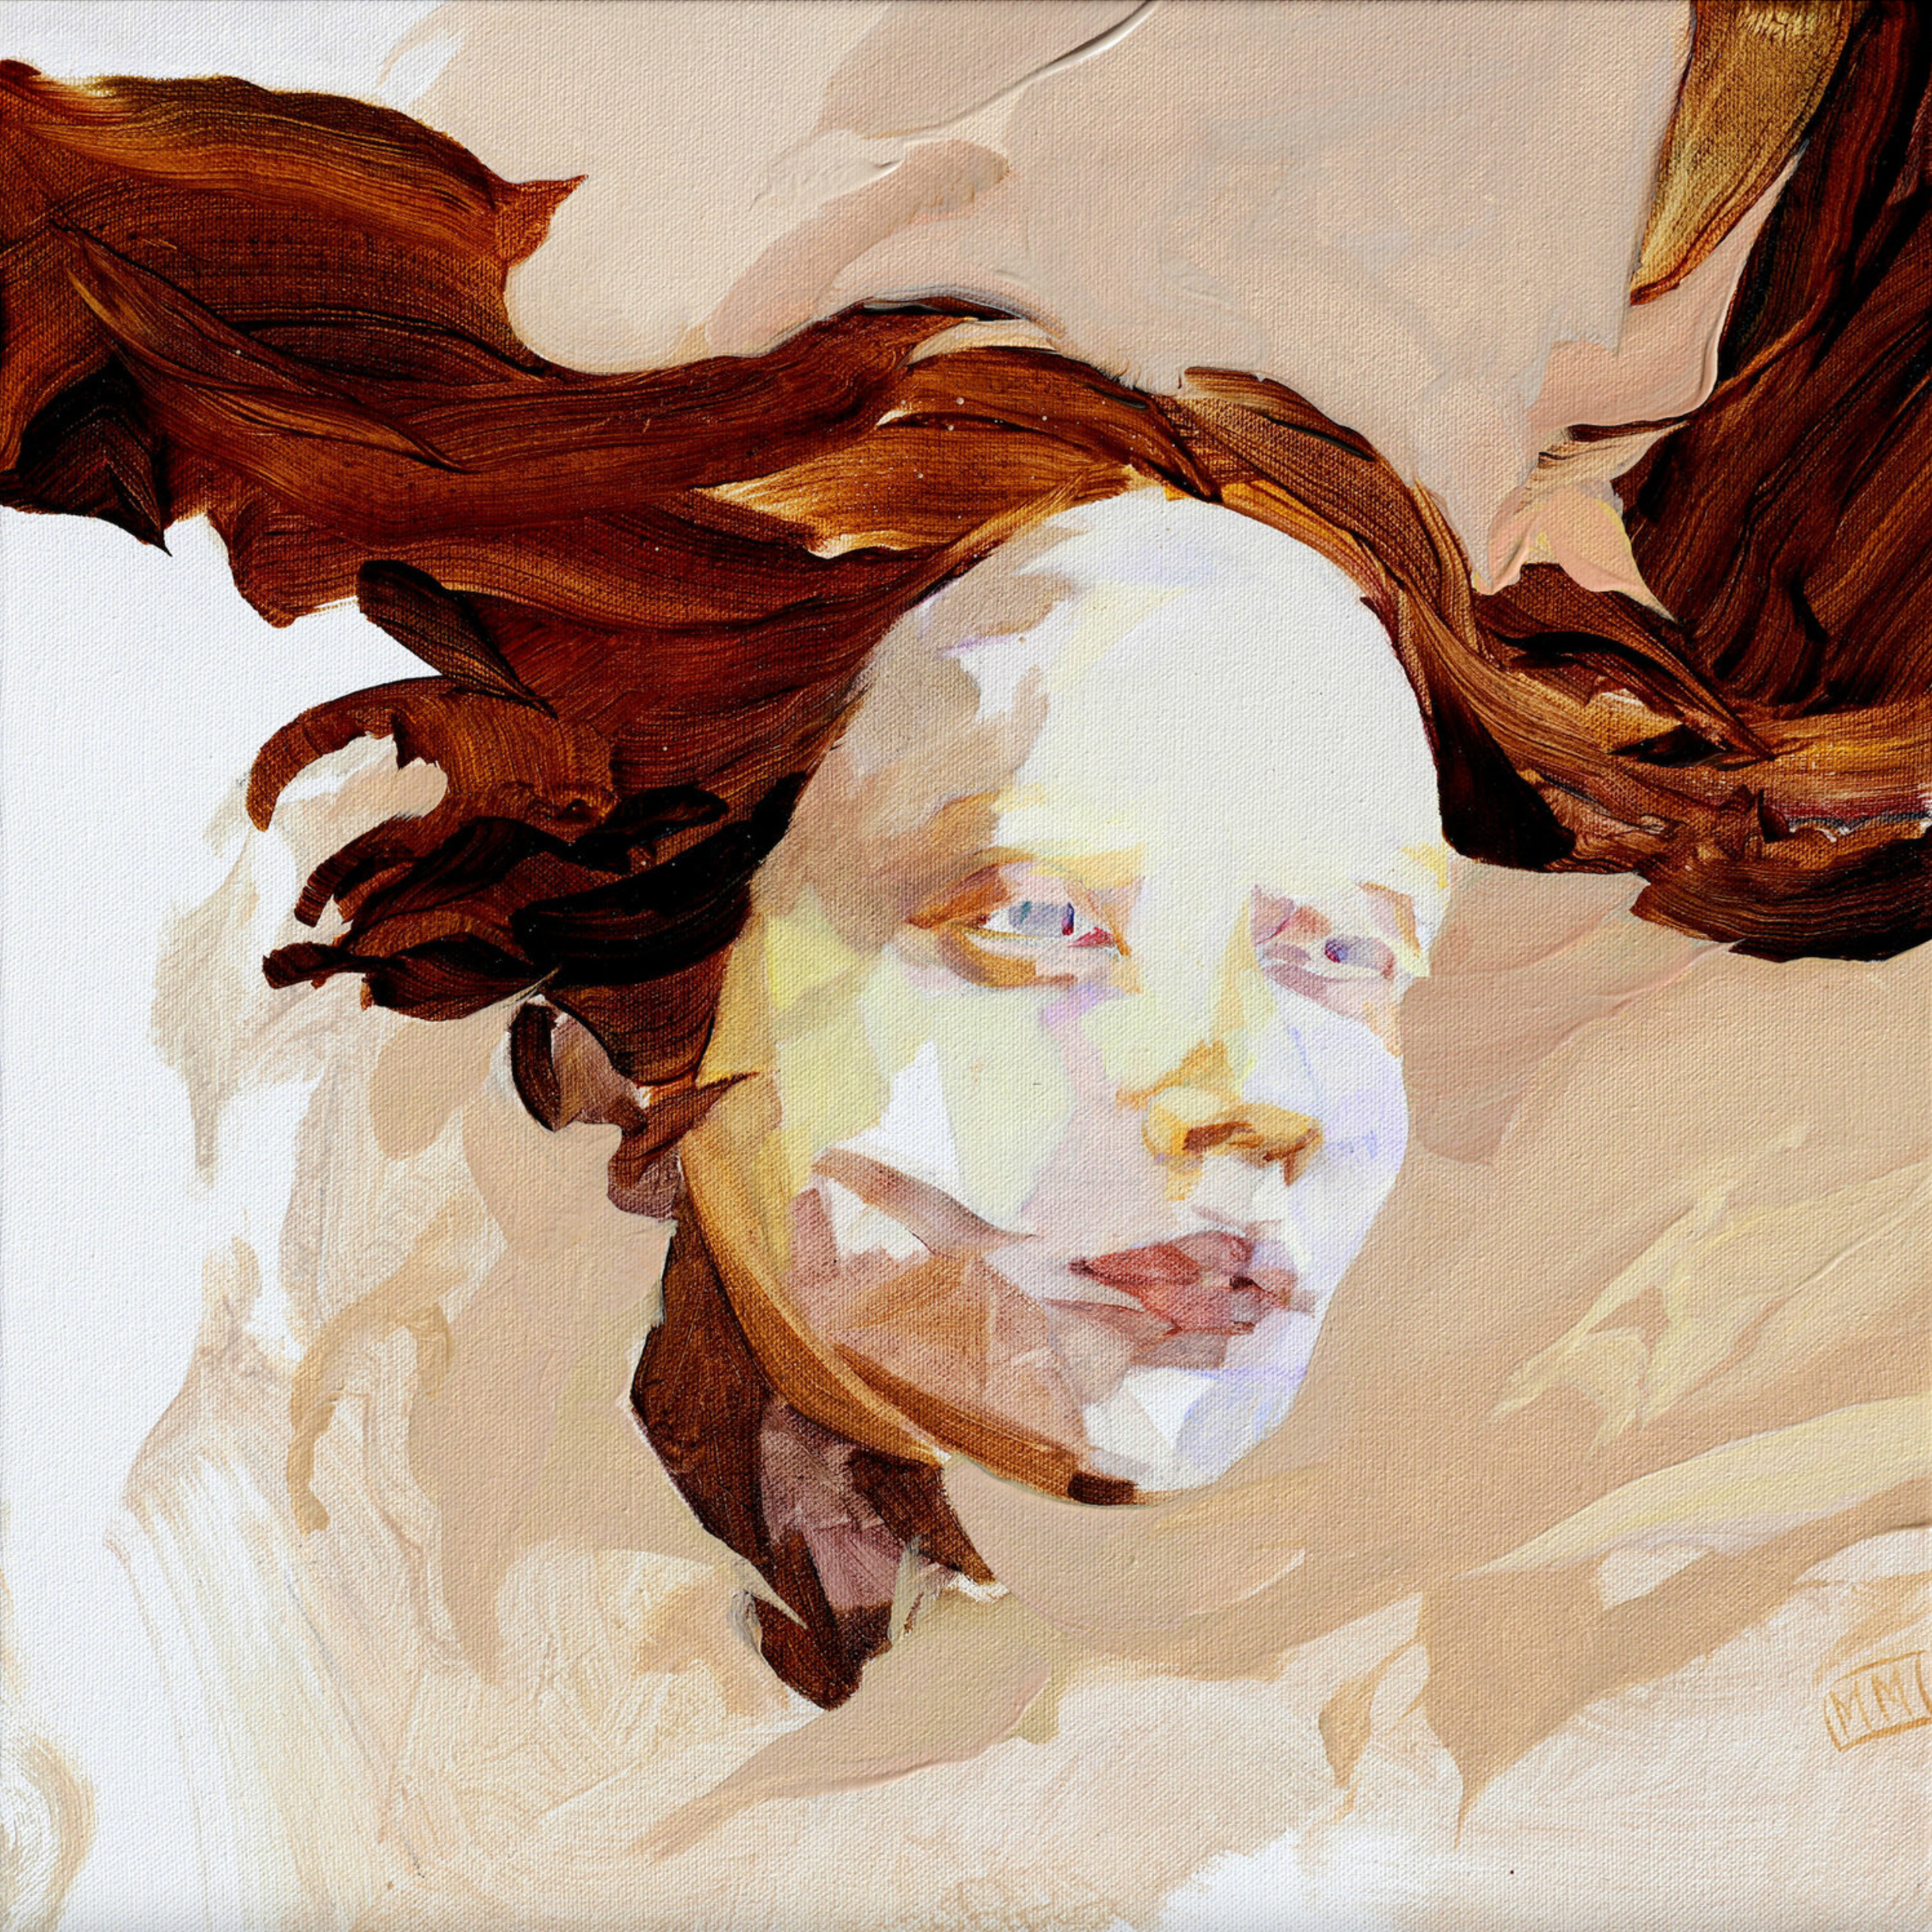 Melinda Matyas ist eine ungarische Malerin mit Sitz in London. Ihr Figurative Frauenporträtbilder "Wind of change" dominieren die Farben Braun und Beige.